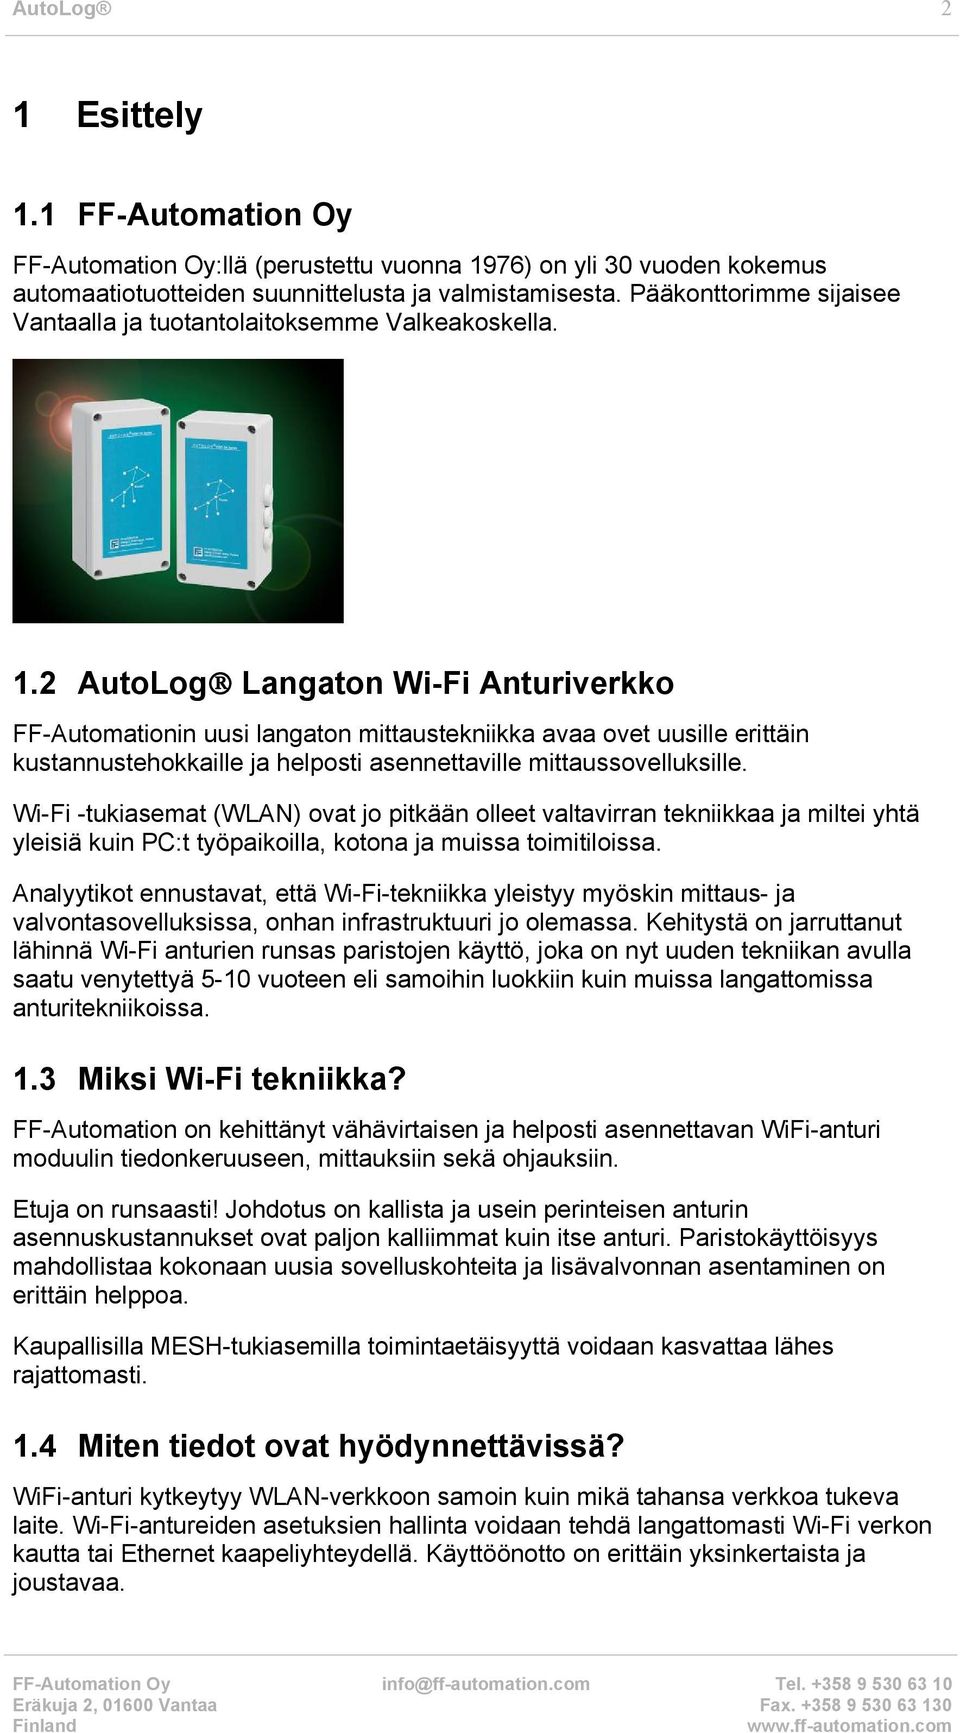 2 AutoLog Langaton Wi-Fi Anturiverkko FF-Automationin uusi langaton mittaustekniikka avaa ovet uusille erittäin kustannustehokkaille ja helposti asennettaville mittaussovelluksille.